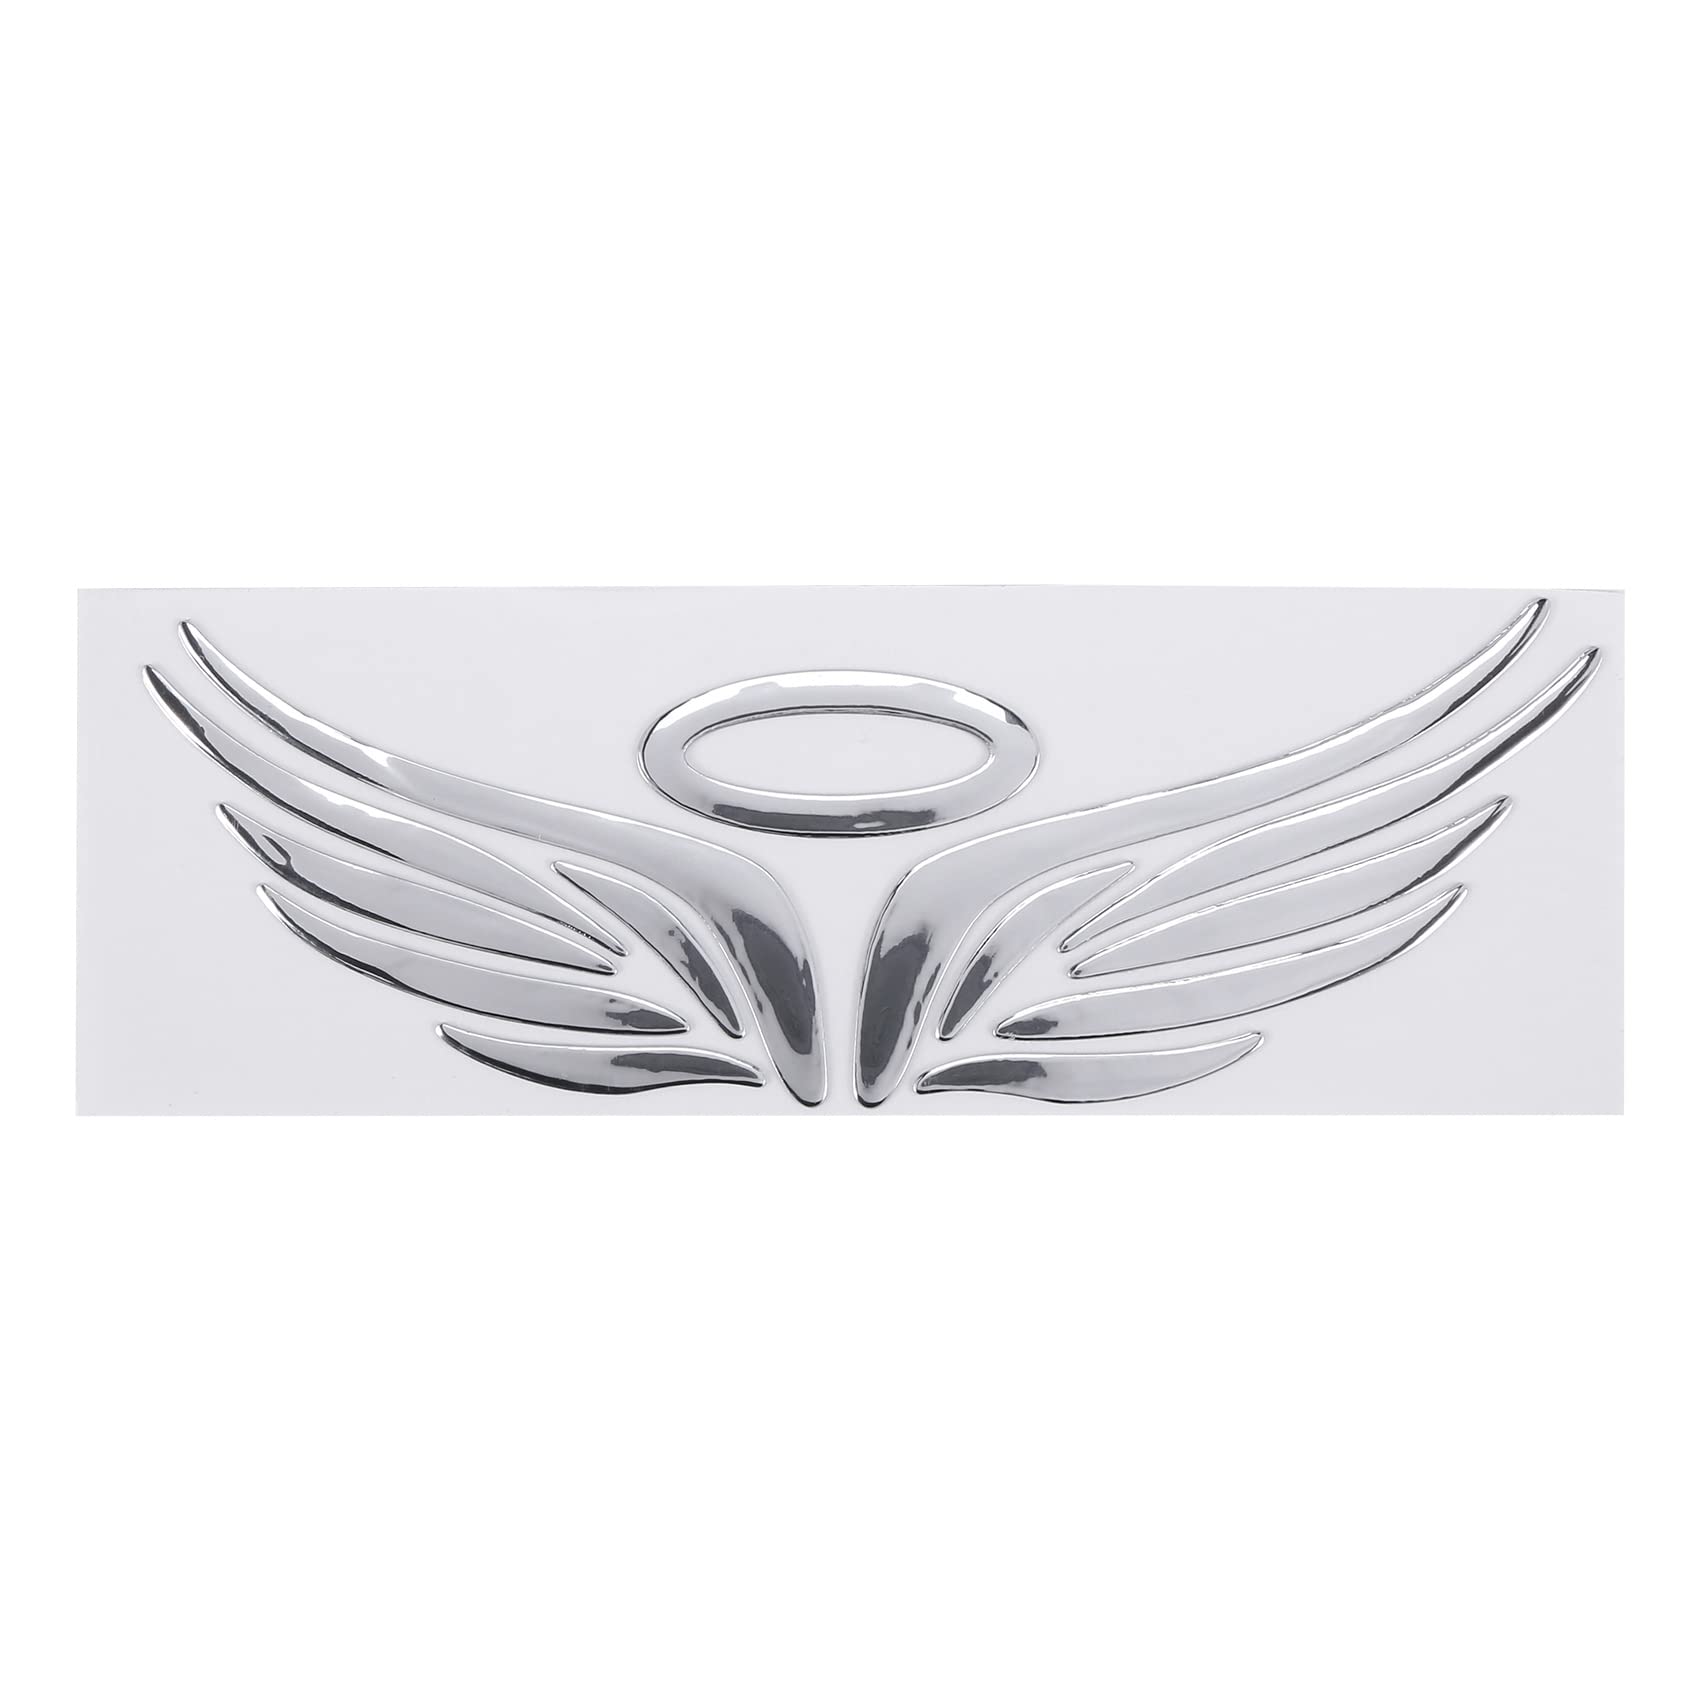 LEYTON 3D Chrom Engels-Fluegel Aufkleber Abziehbild Auto Wagen Emblem Abziehbild Dekoration Farbe Silber von LEYTON